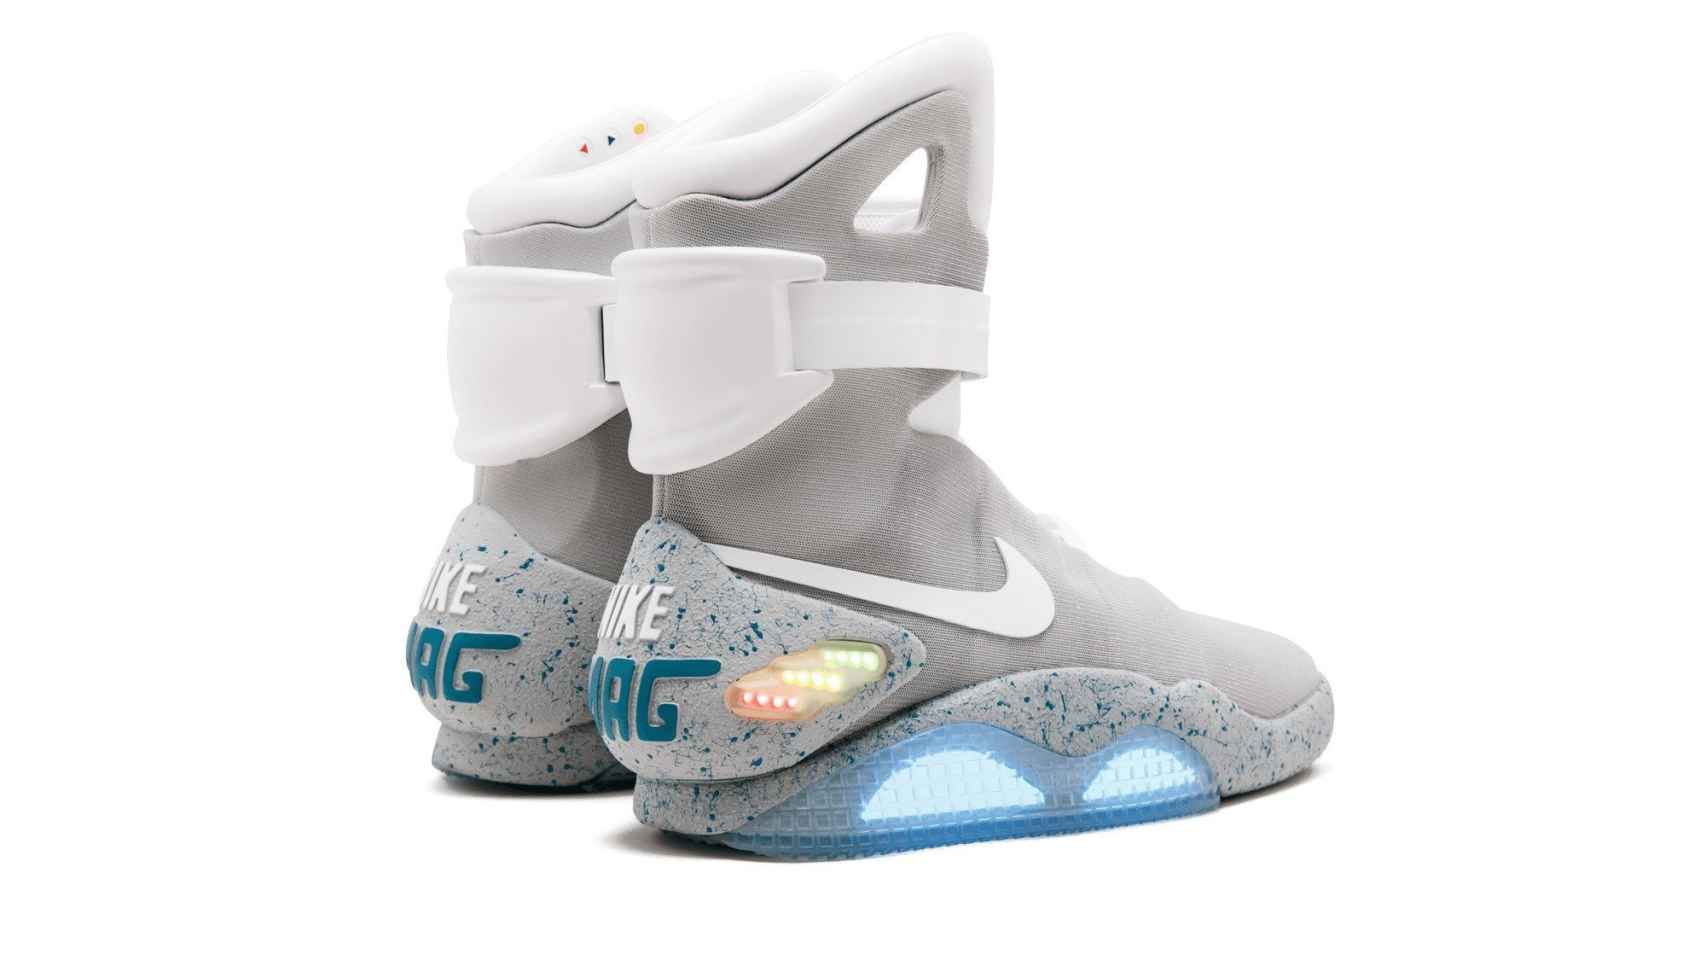 Zapatillas Nike Mag de 2016, inspiradas en las de Marty McFly en 'Regreso al futuro'.